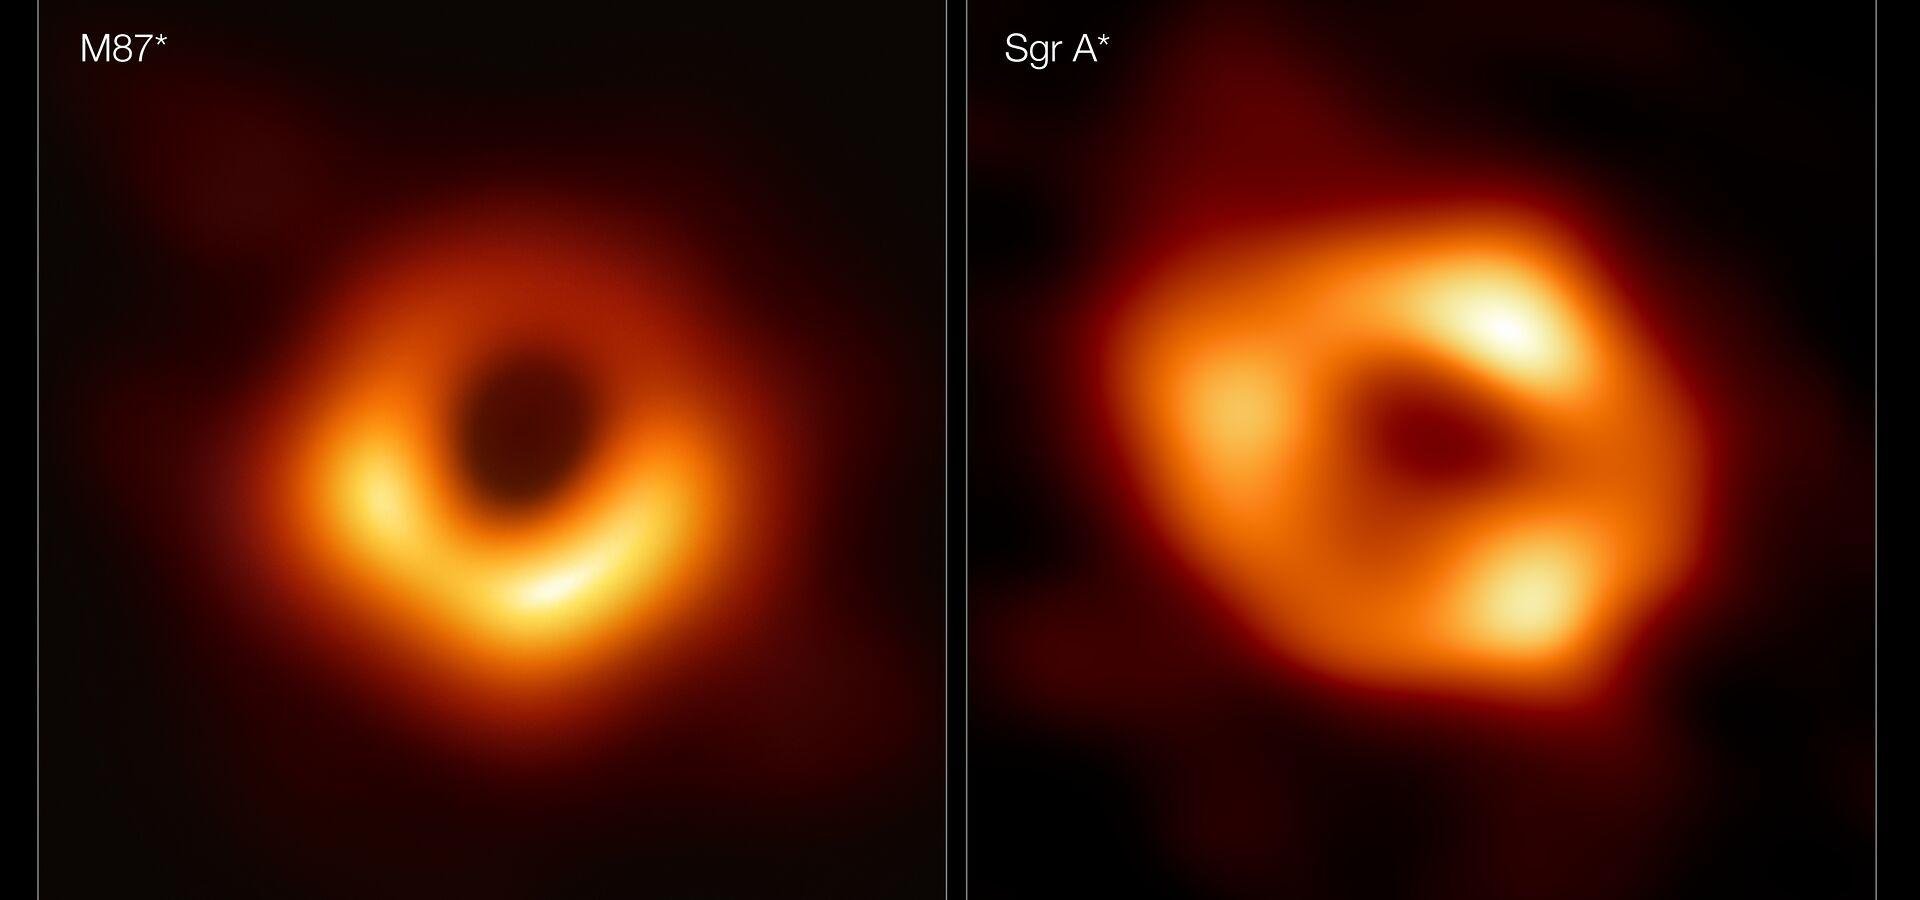 Comparação entre o buracos negro da M87 e Sgr A*.